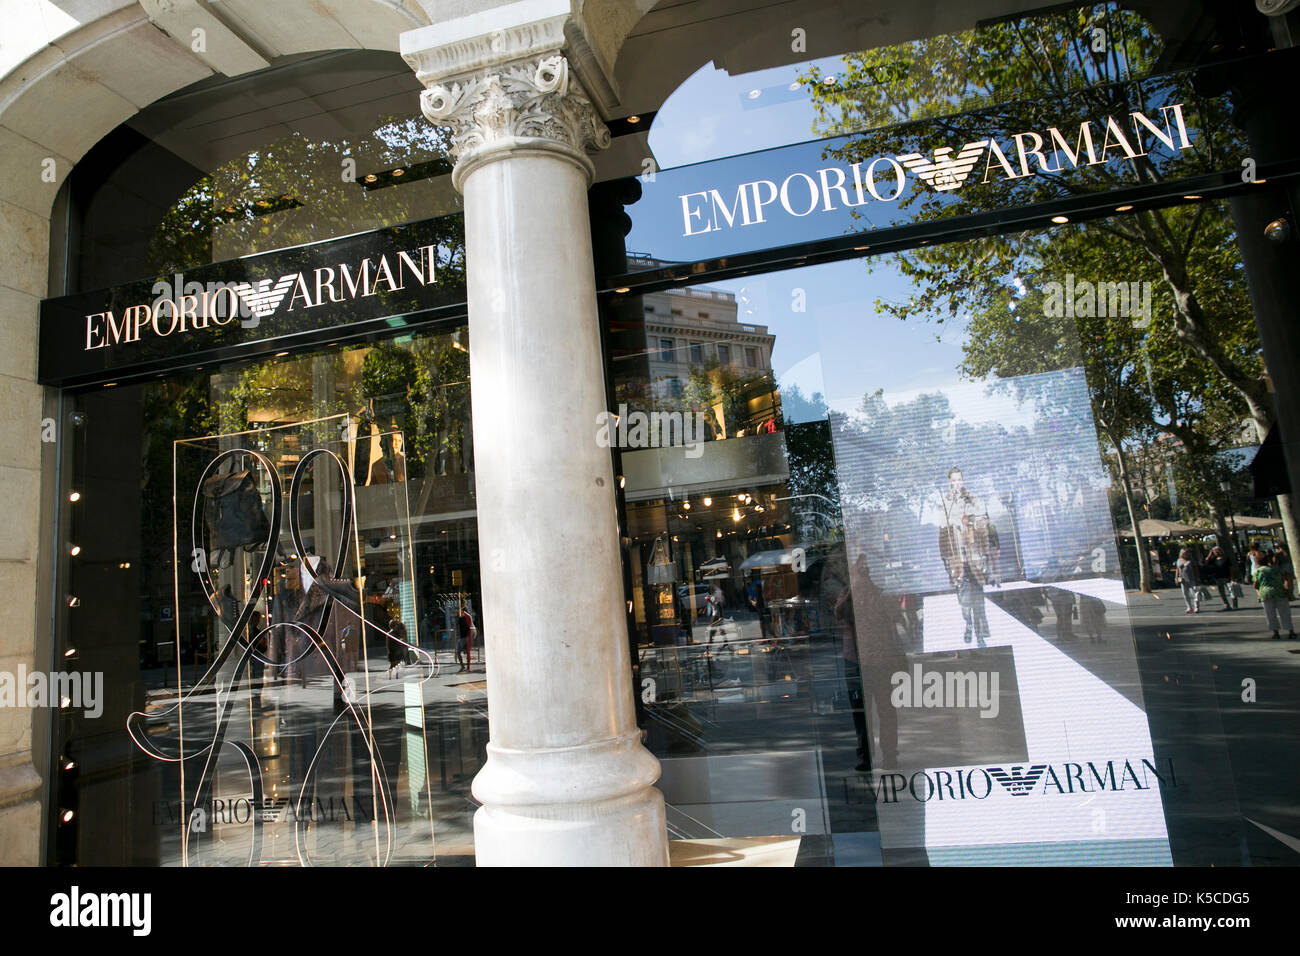 Emporio Armani store by Giorgio Armani, Belgrade